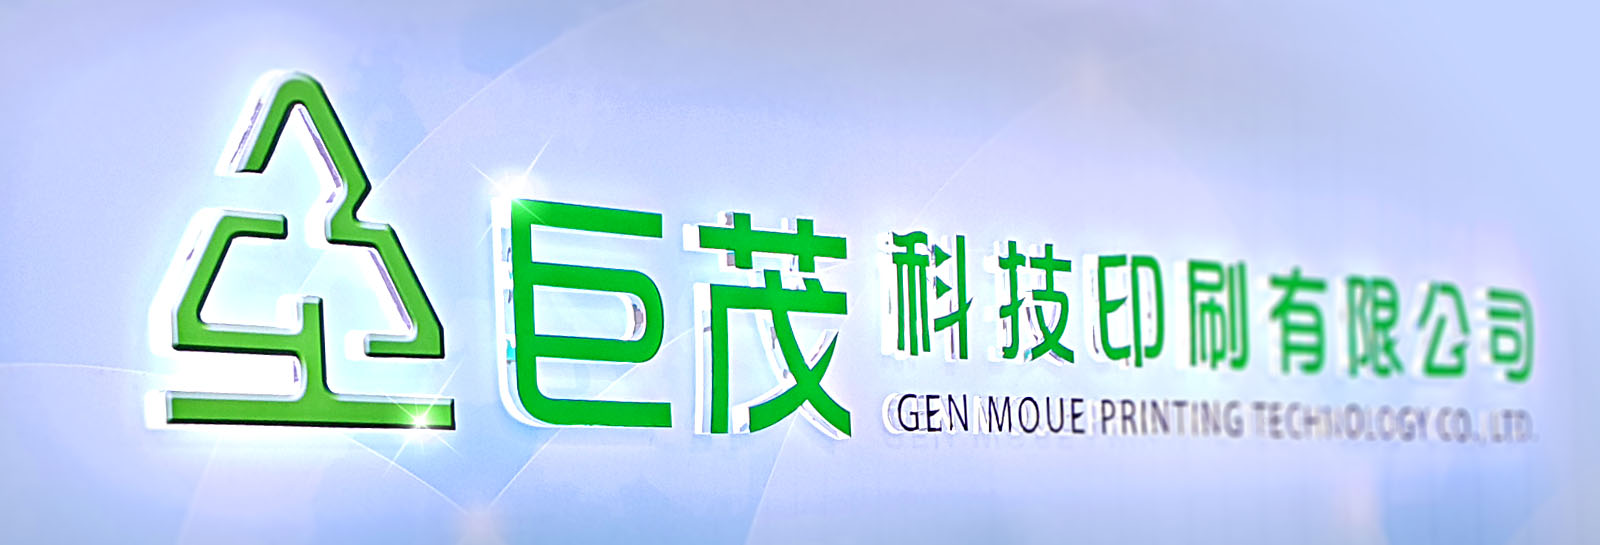 GM-logo-1